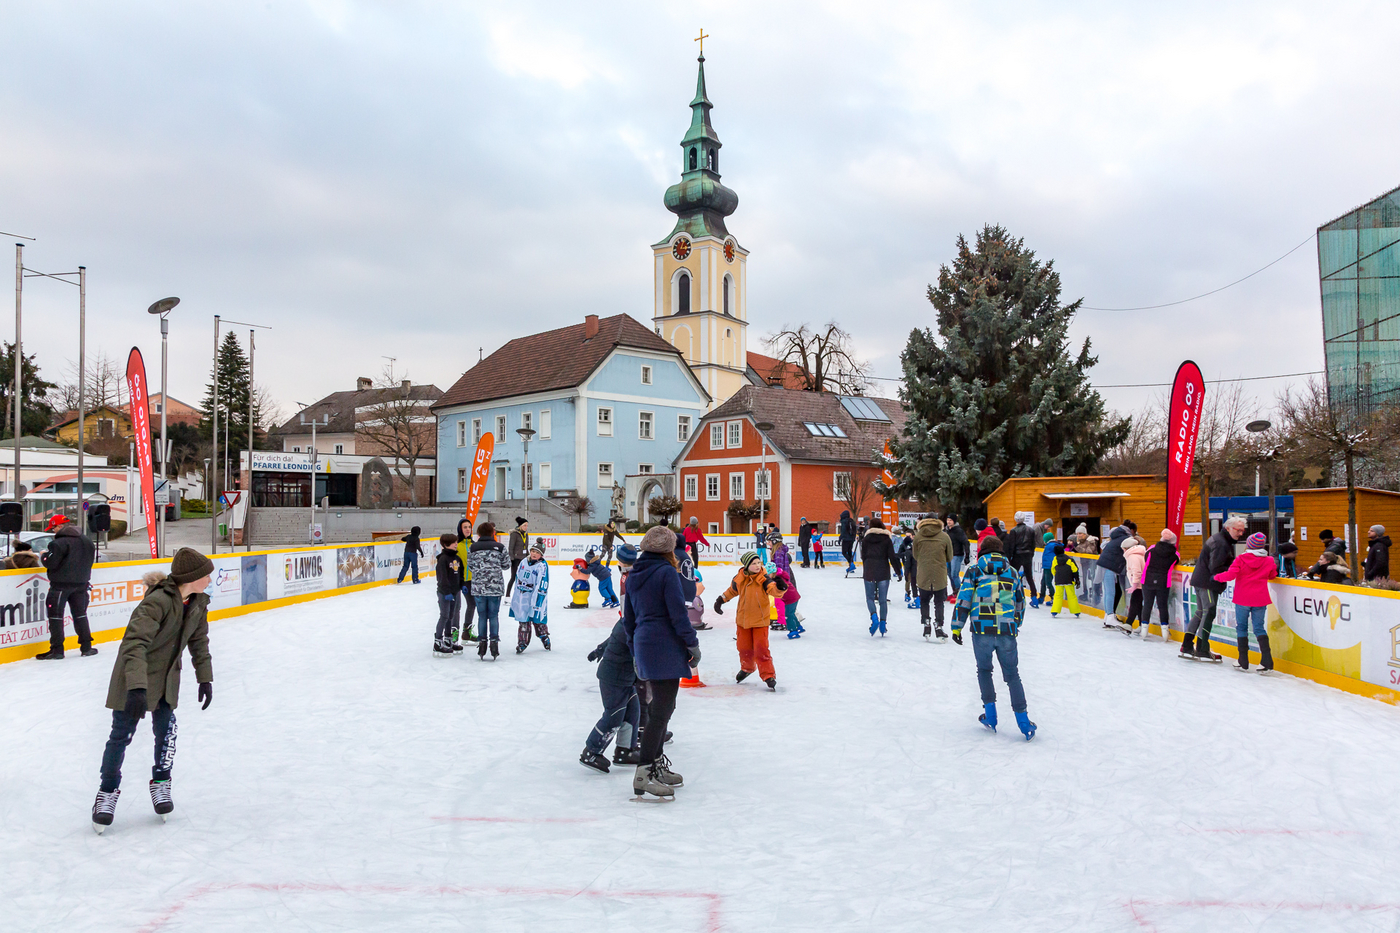 Eislaufplatz mit Kindern, Hintergrund: Kirche und blaues Haus